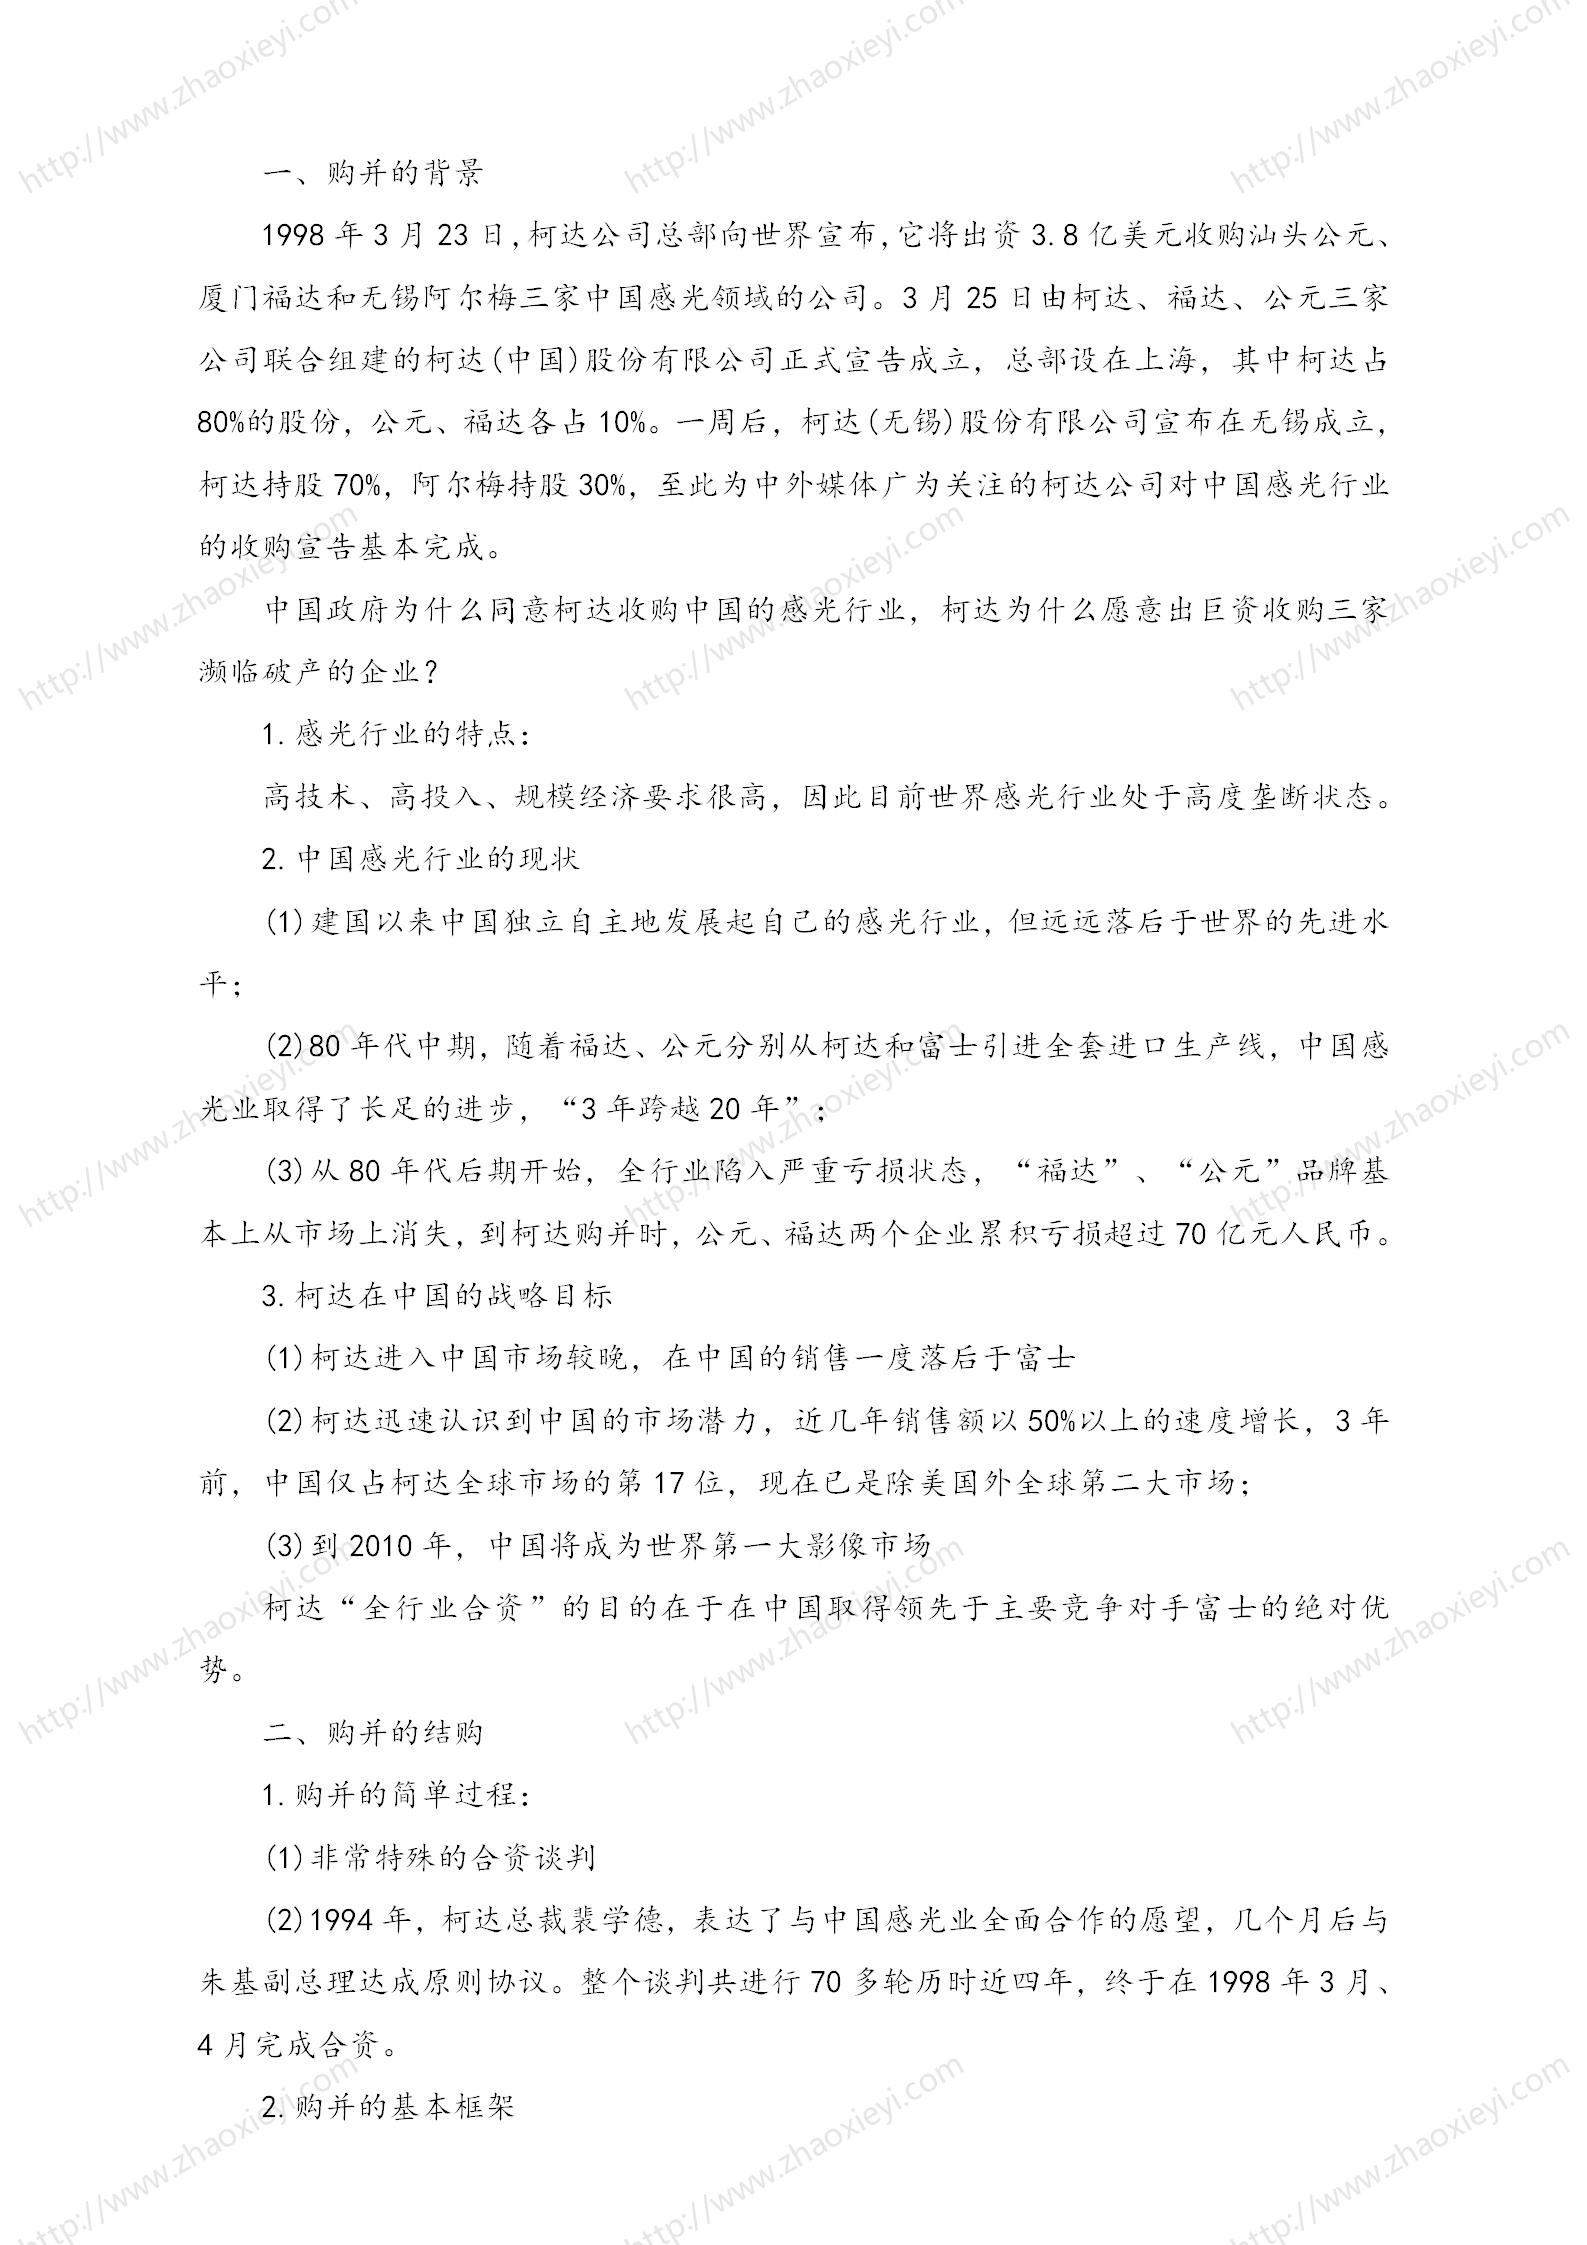 中国企业并购经典案例_153.jpg